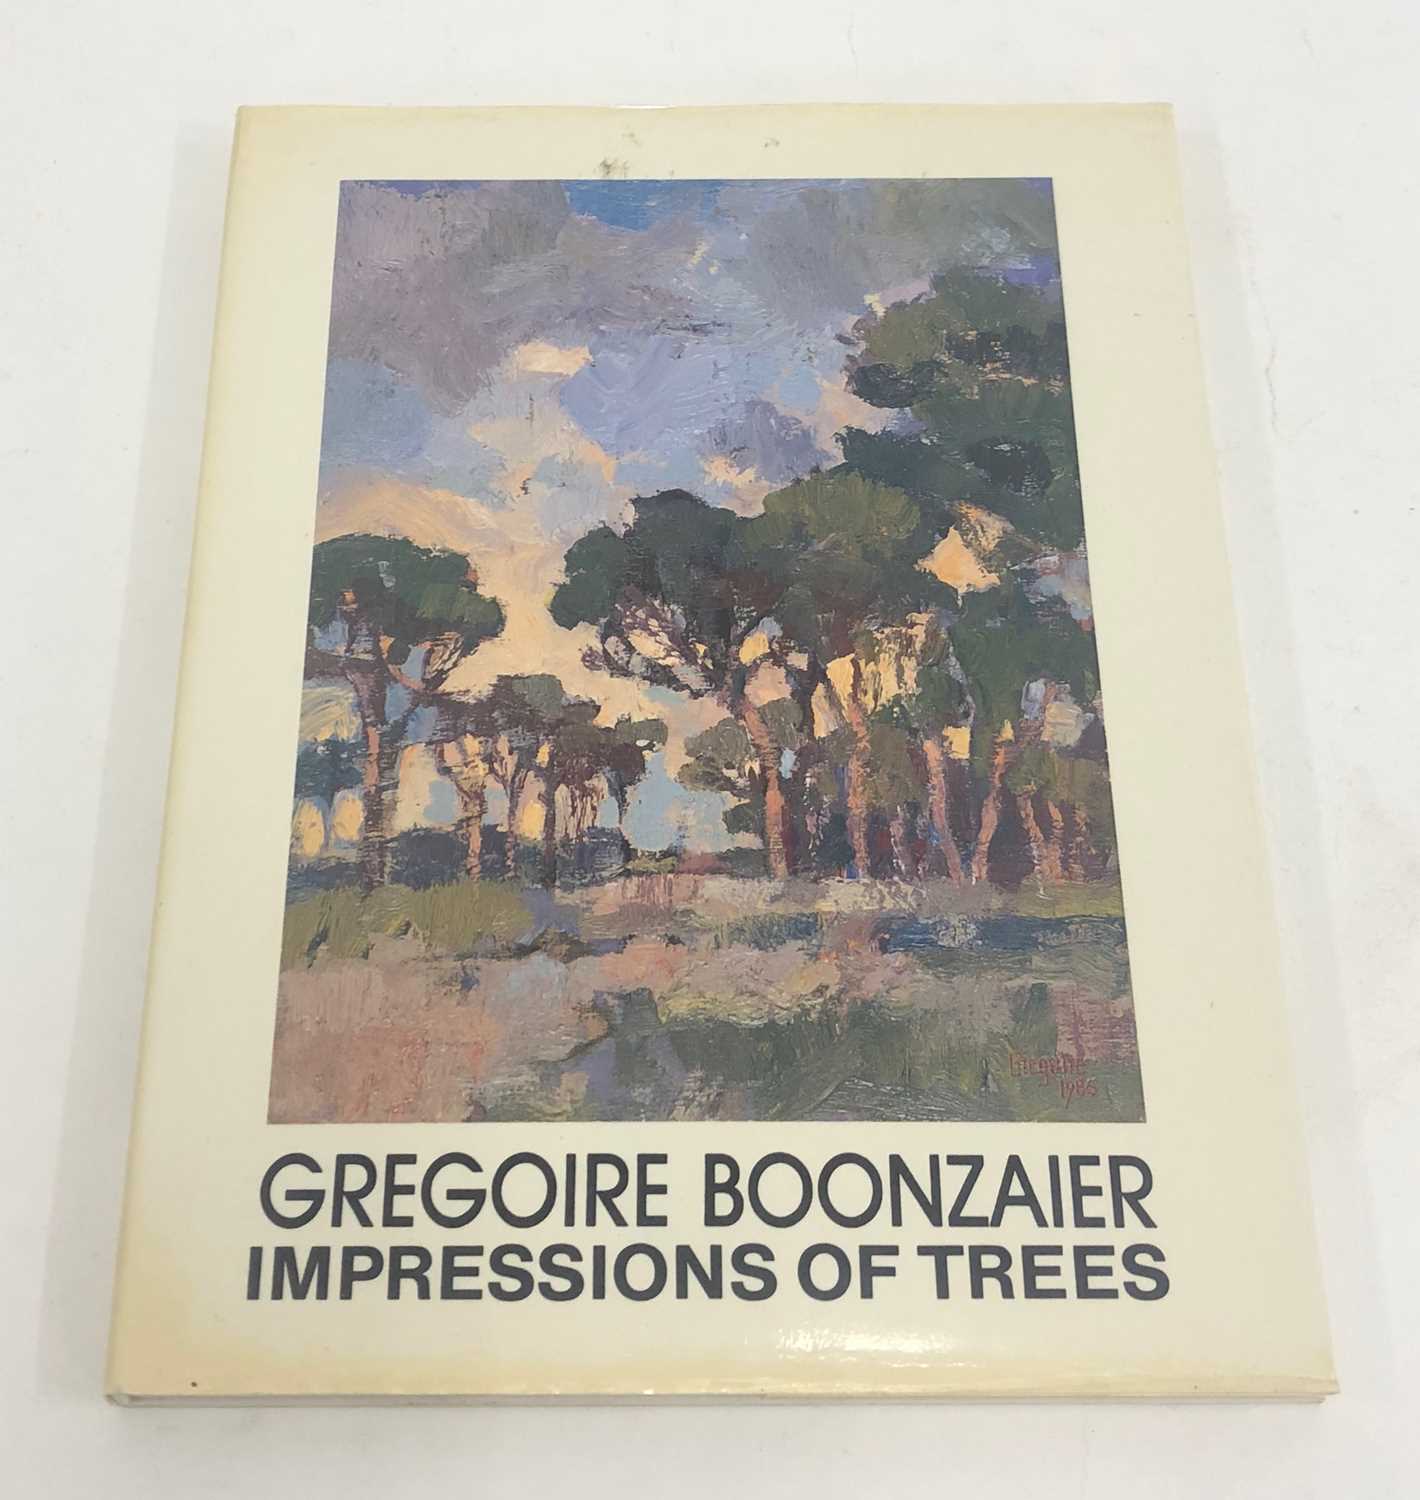 Lot 23 - Joubert, D. M. and Schoonraad, M. G. Gregoire Boonzaier: Impressions of Trees